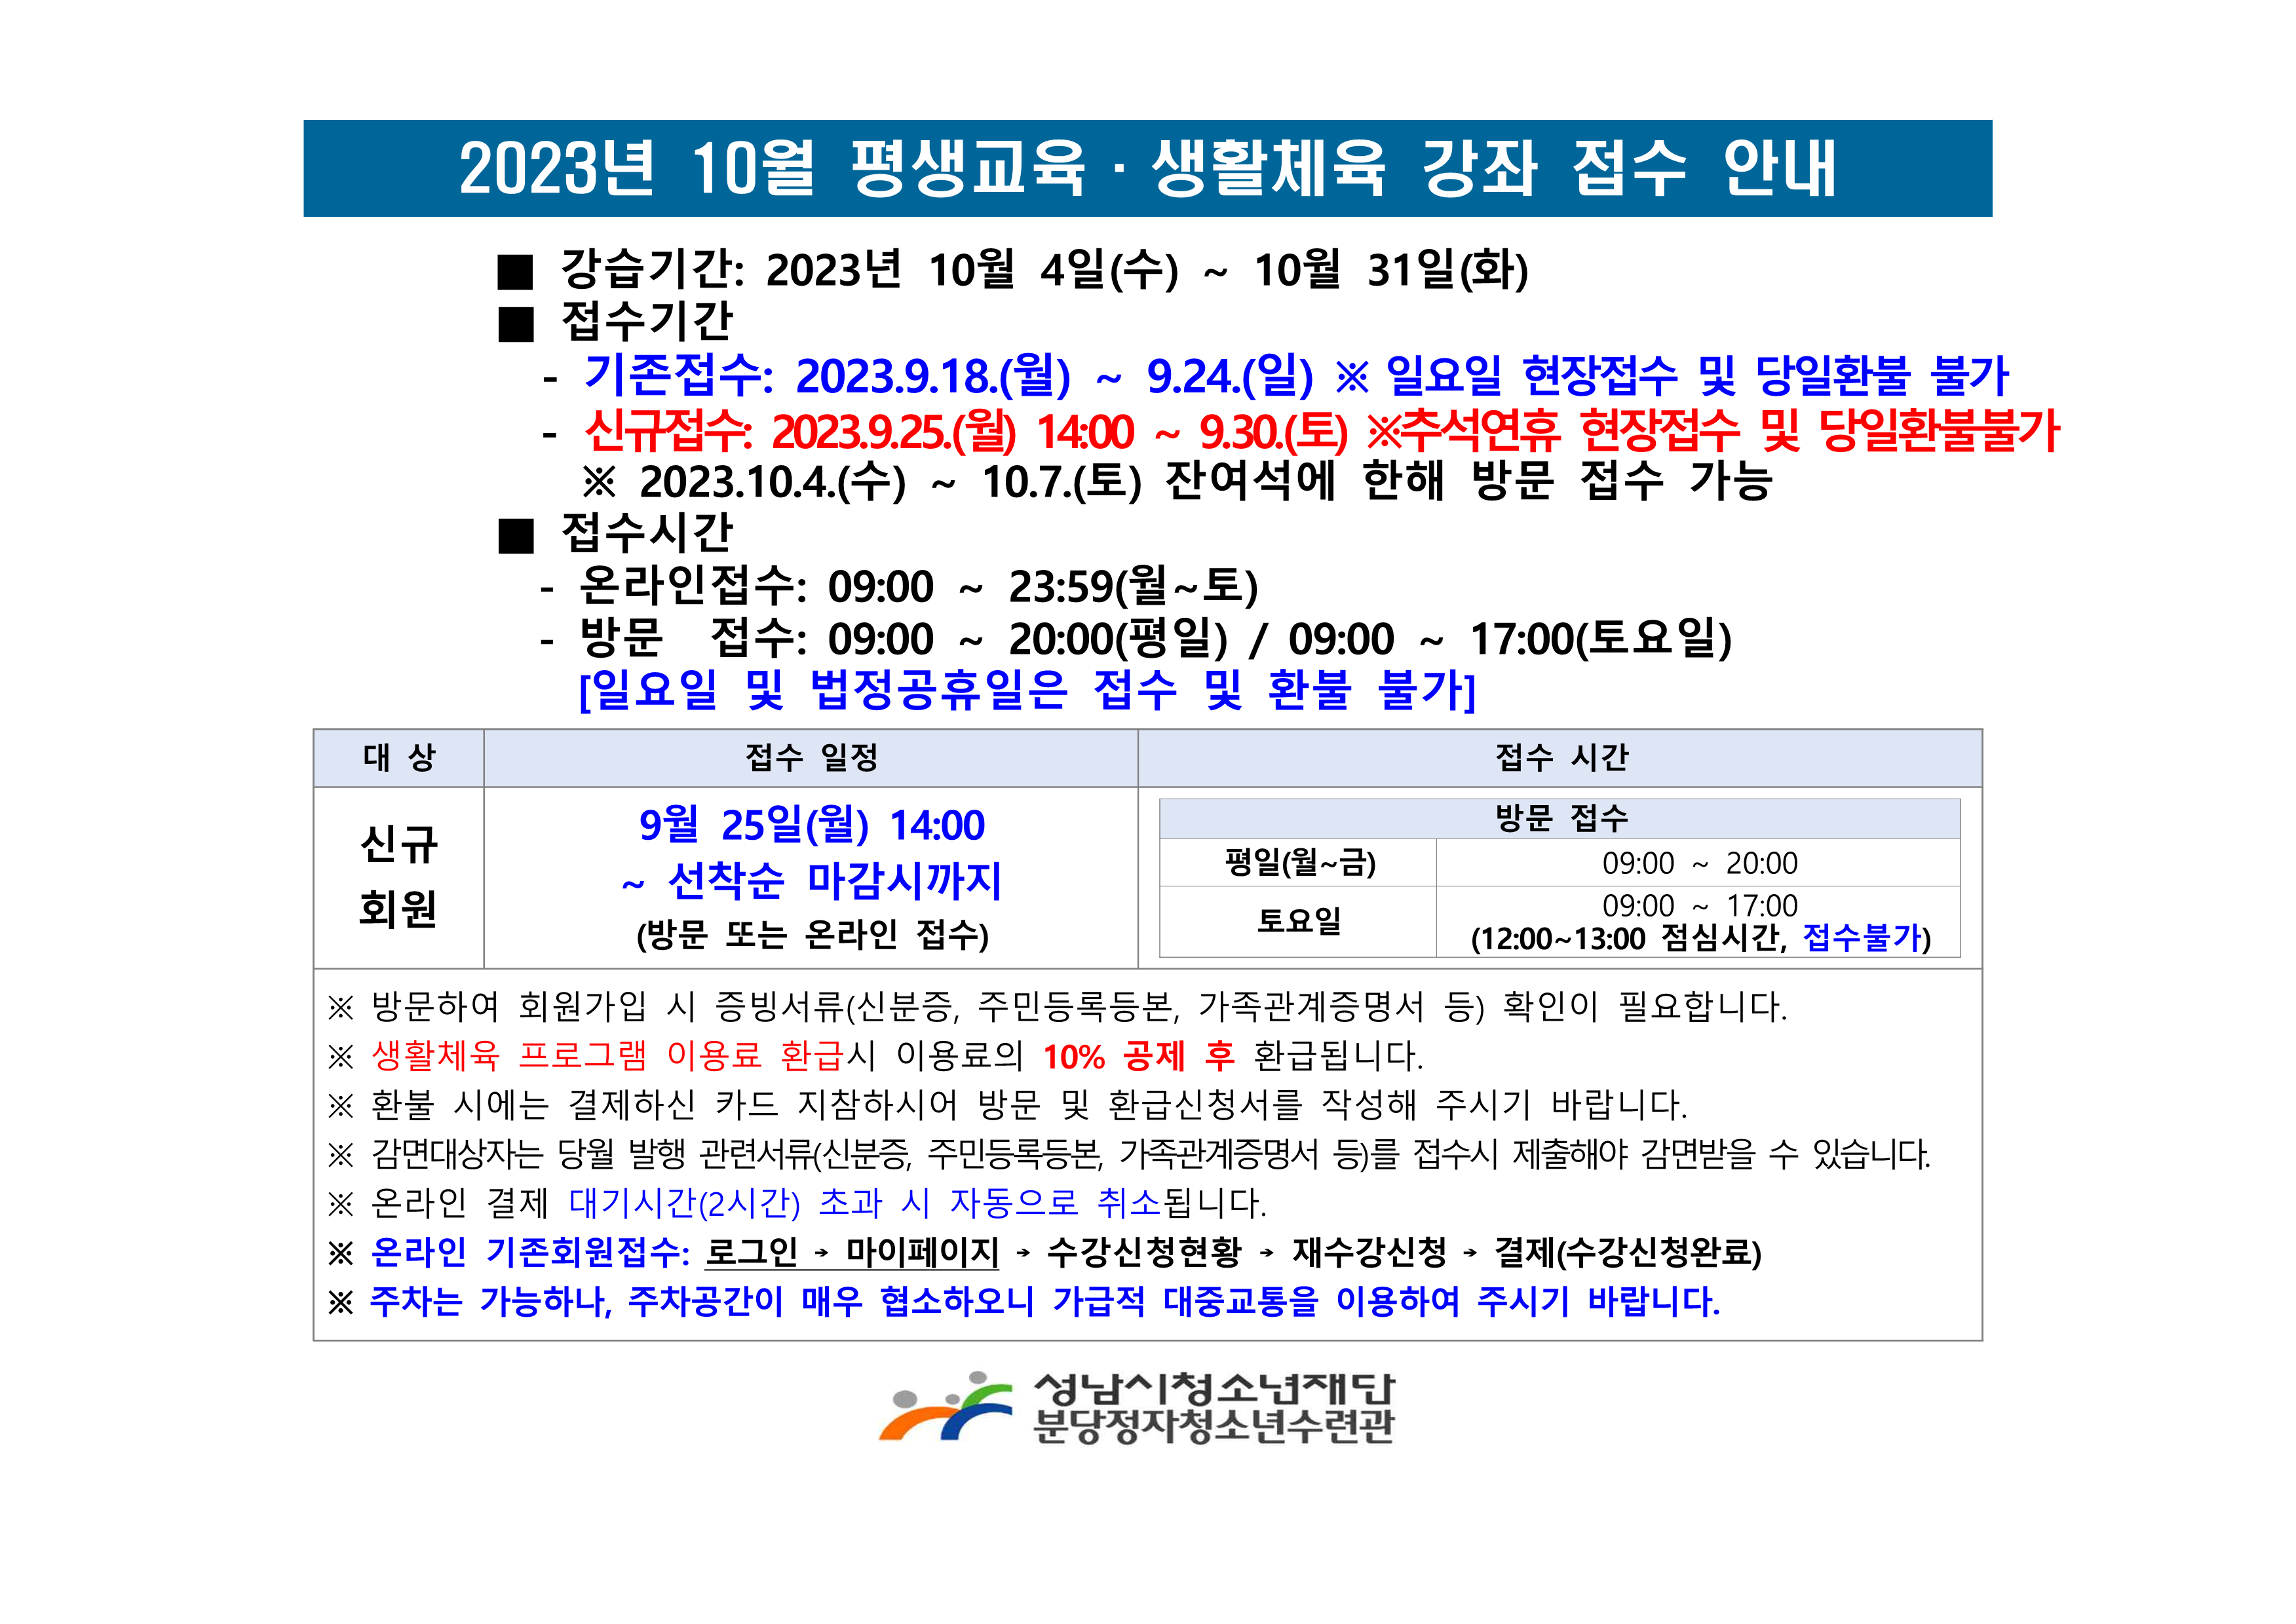 ■ 2023. 10월 평생교육 생활스포츠 헬스 프로그램 접수일정_1.png